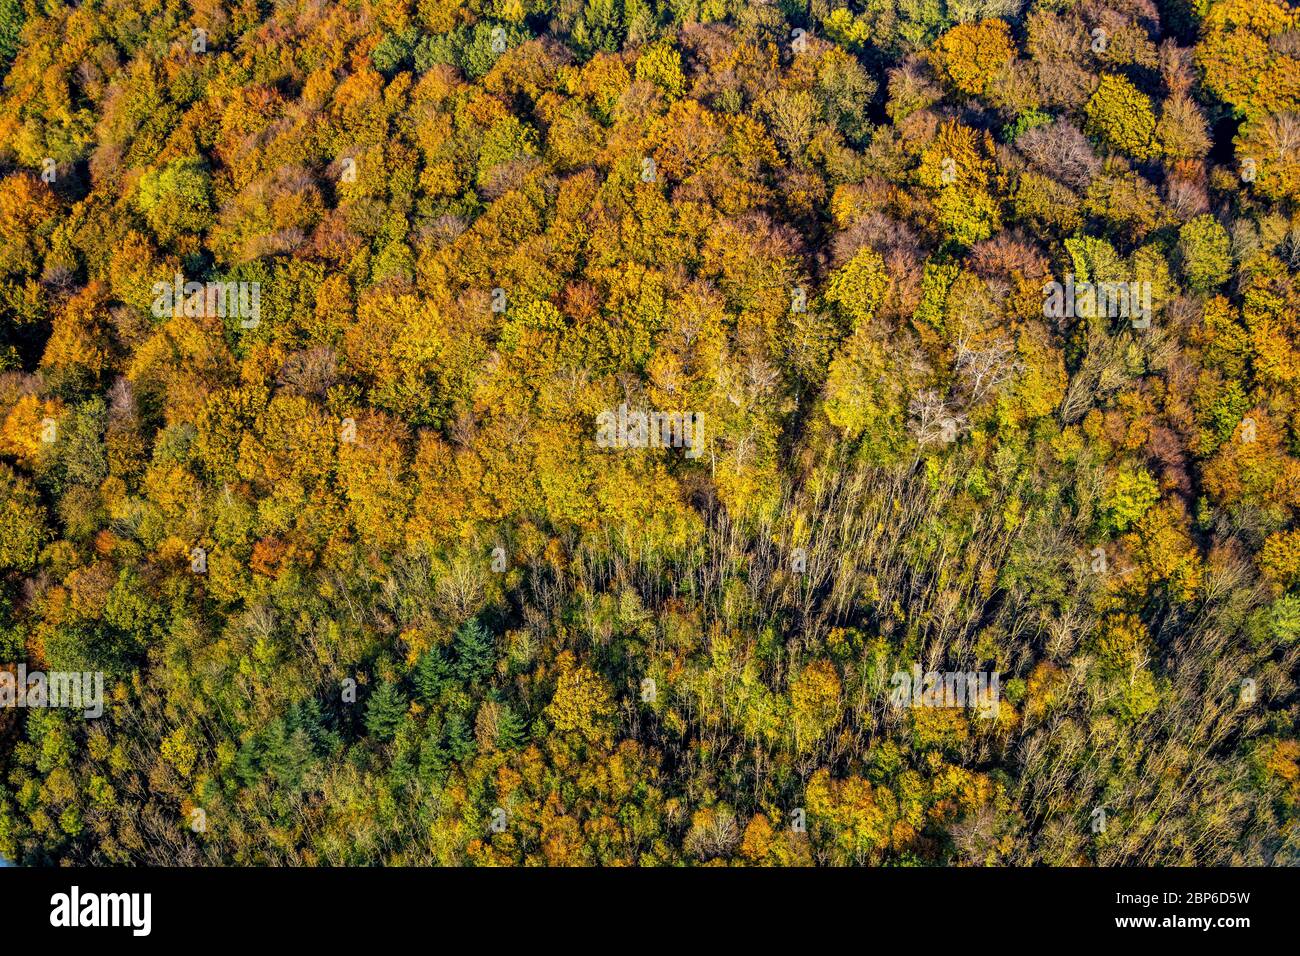 Vue aérienne, forêt d'automne aux couleurs vives, près de la carrière Habbel, Arnsberg, pays aigre, Rhénanie-du-Nord-Westphalie, Allemagne Banque D'Images